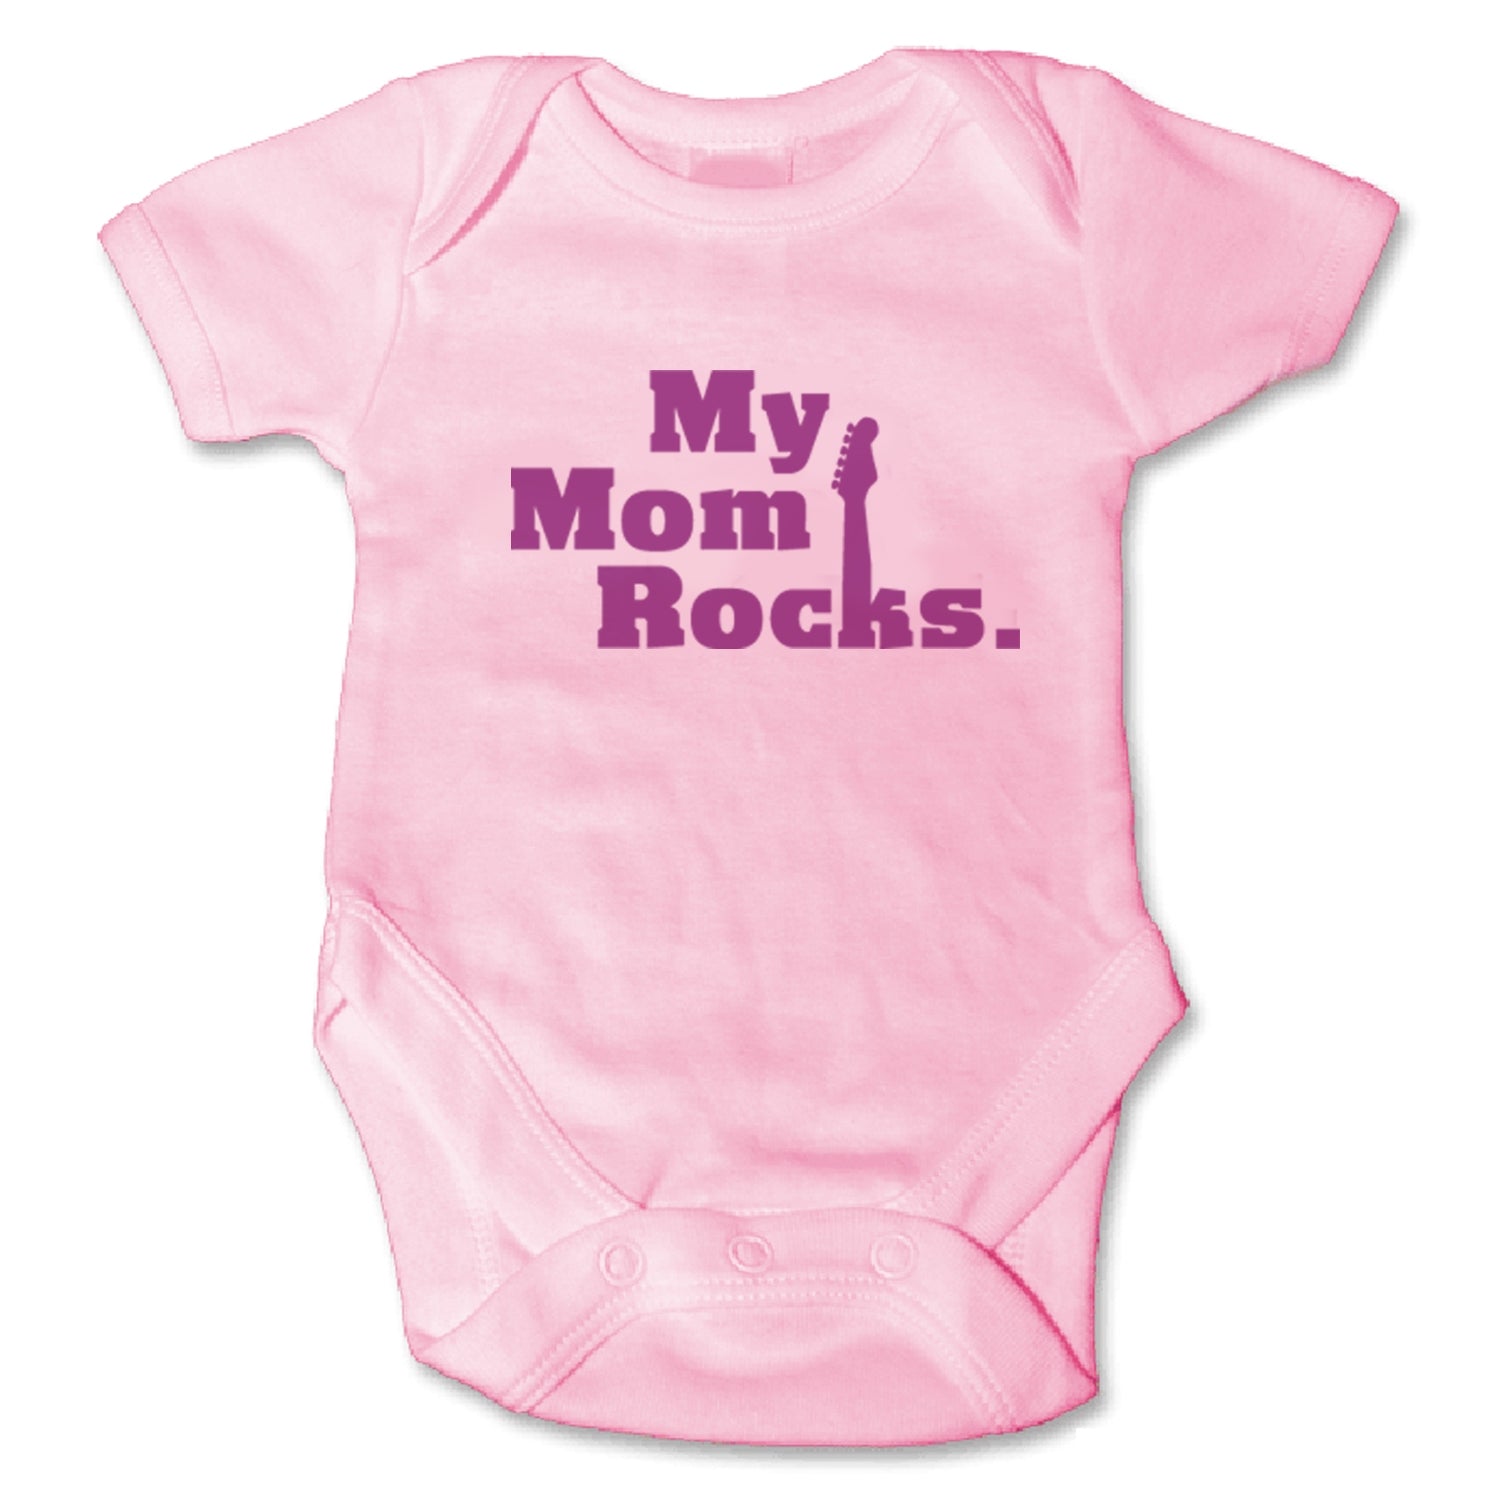 Sol Baby Original Pink 'My Mom Rocks' Onesie